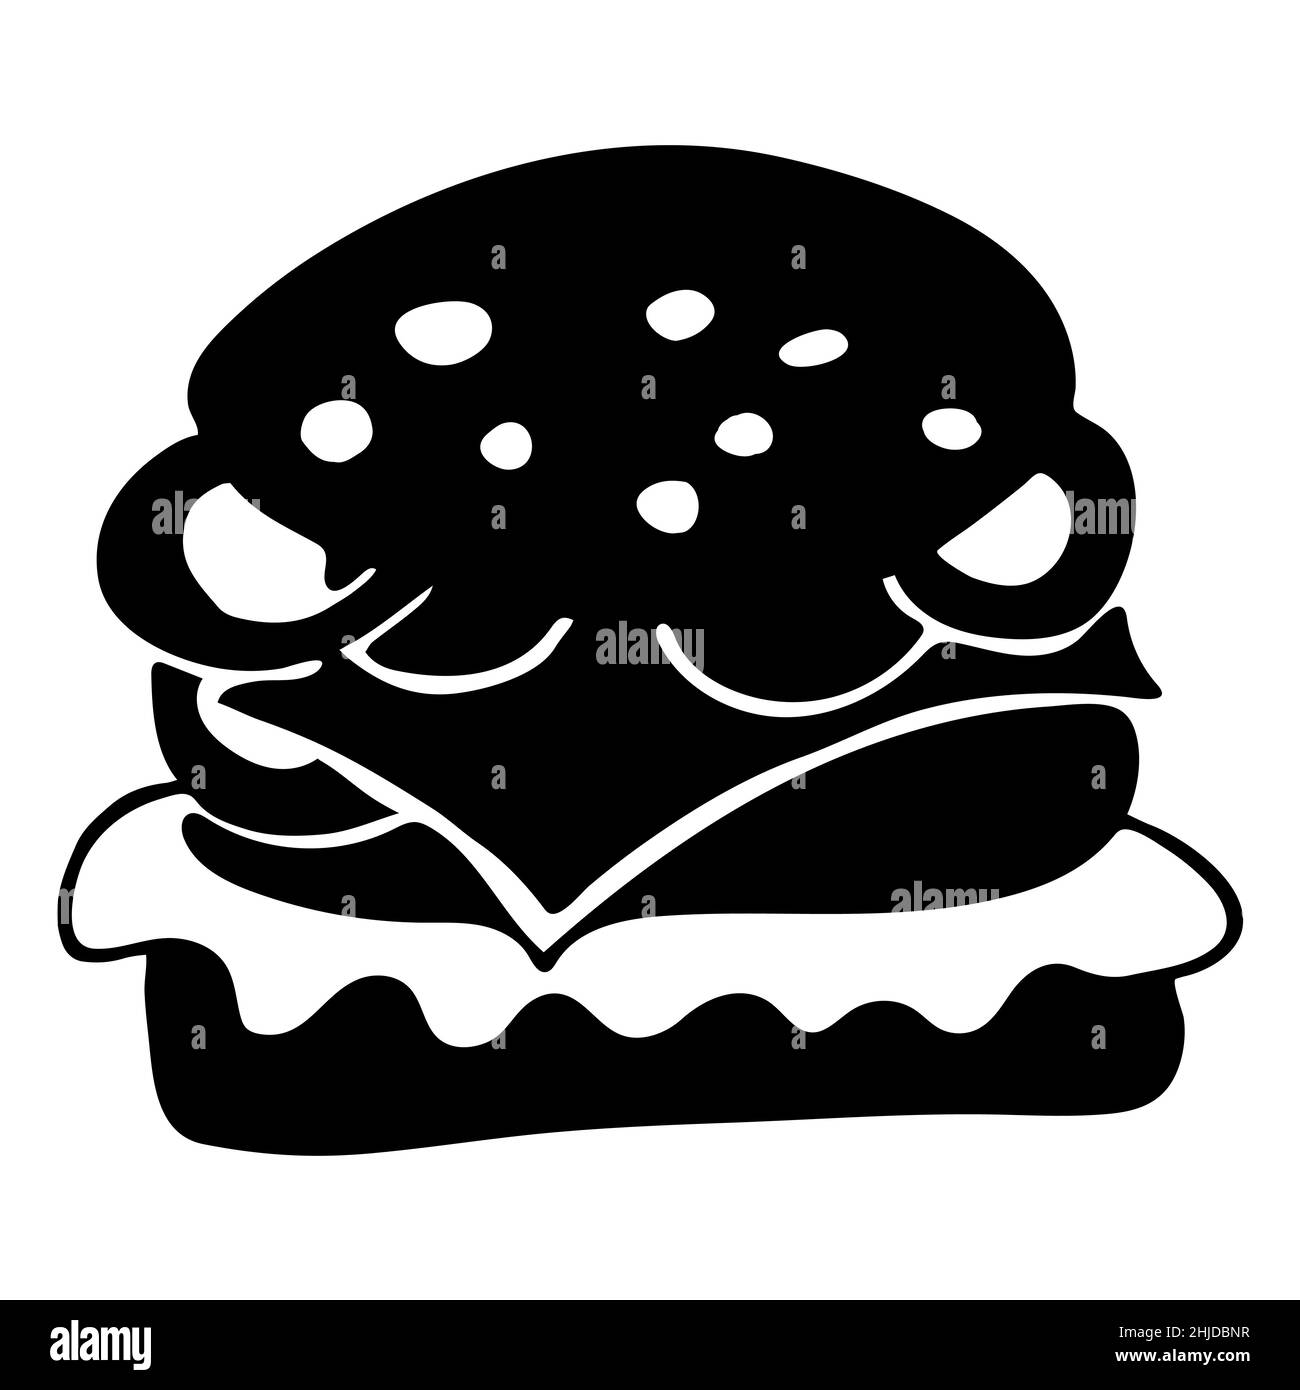 Isolieren Sie die schwarz-weiße Abbildung des Burgers. Symbol oder Zeichen für Essen, Produkt oder Menü Stock Vektor